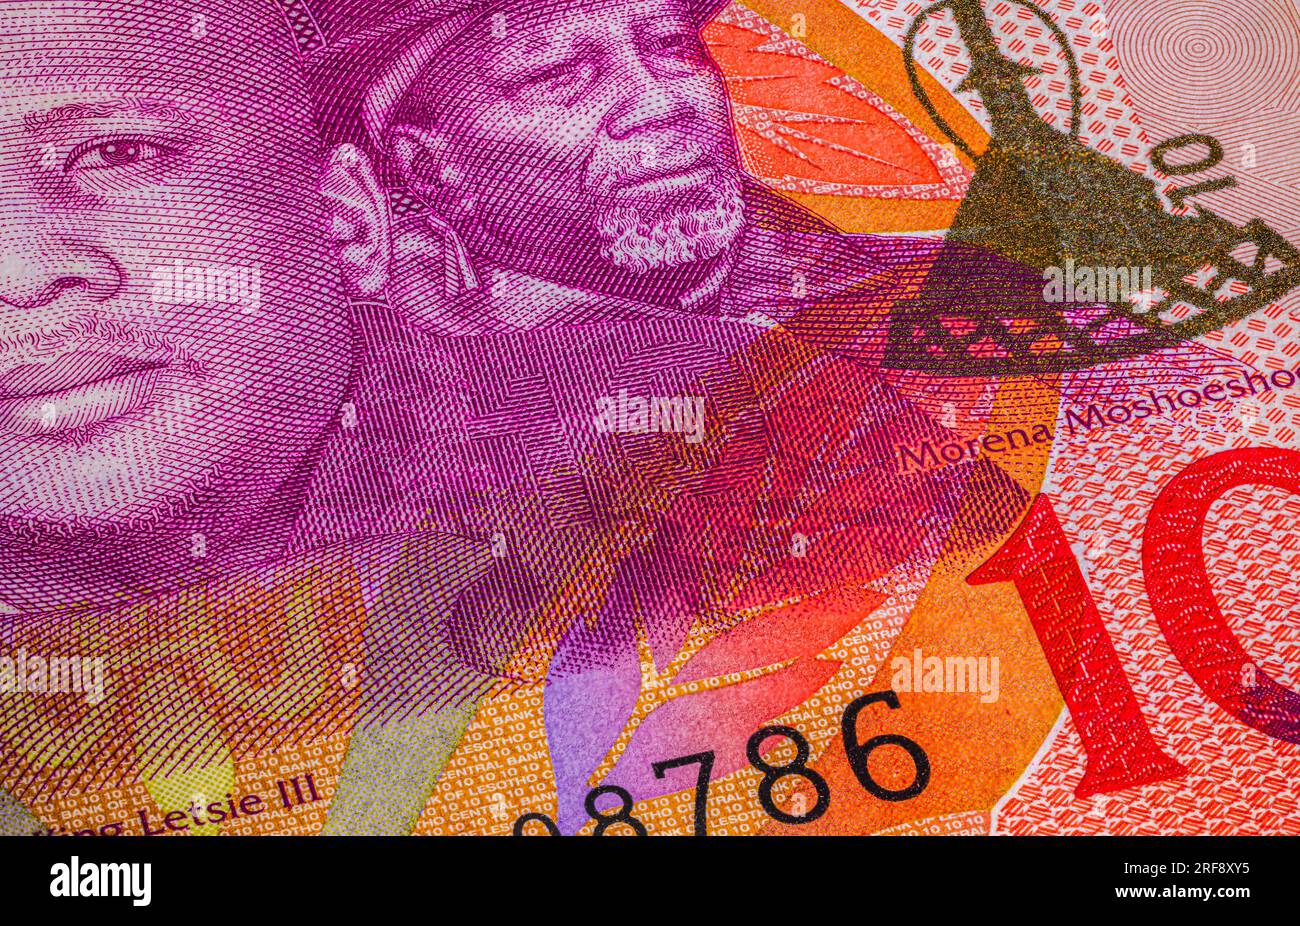 Un billet de banque du Lesotho est un mélange captivant d'art et de représentation culturelle. Il présente des couleurs vives, Lesotho Loti respire la fierté et l'identité Banque D'Images